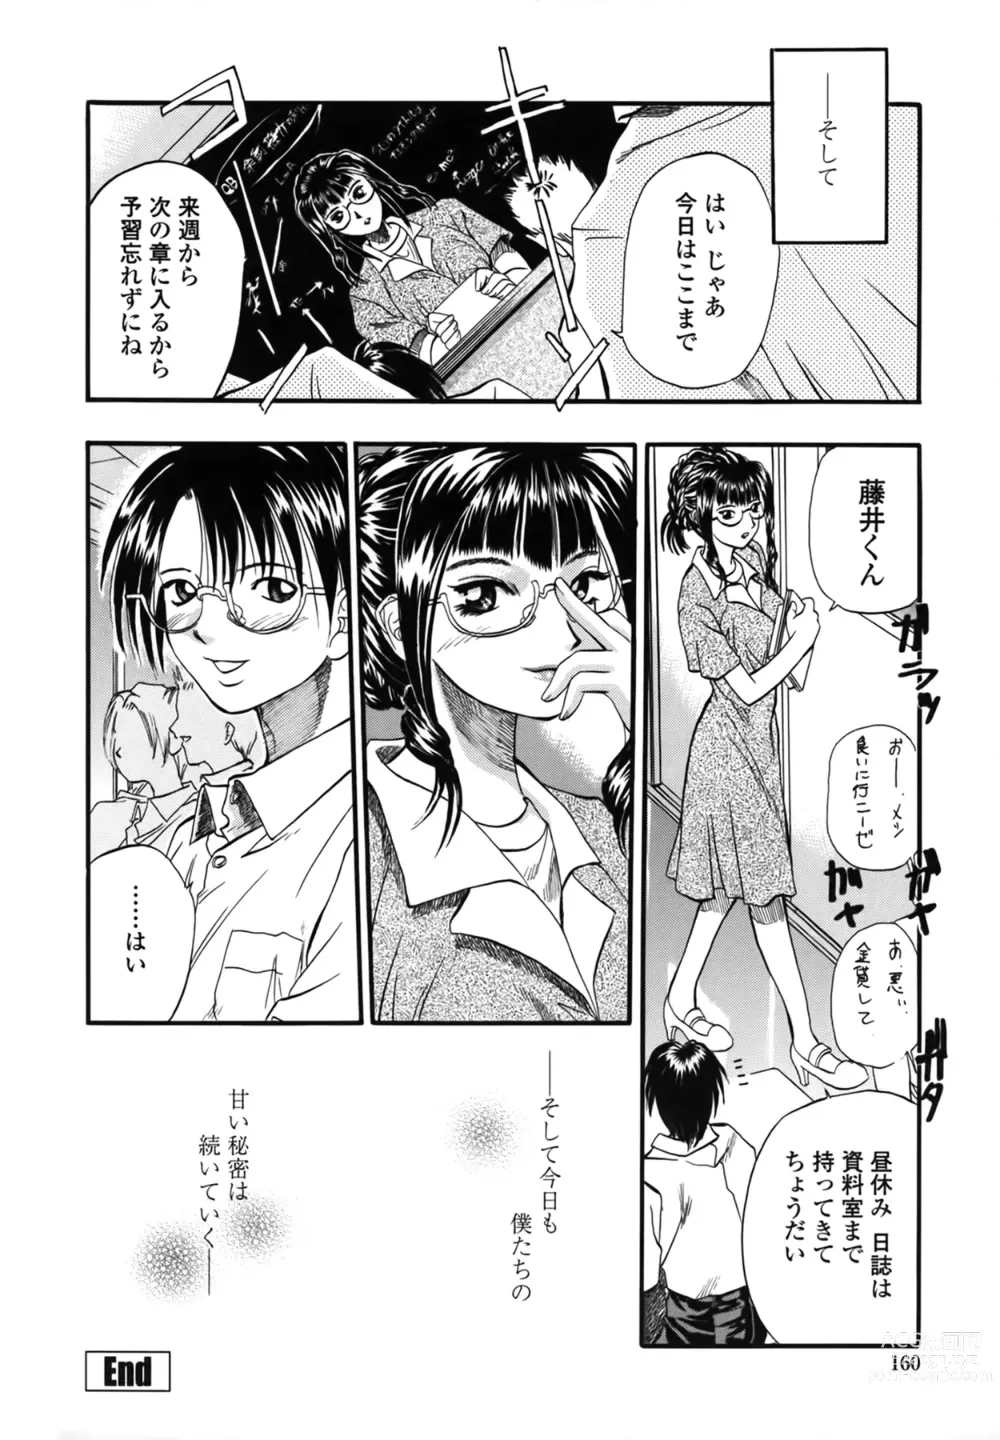 Page 160 of manga Yuu Mama - Painful Love